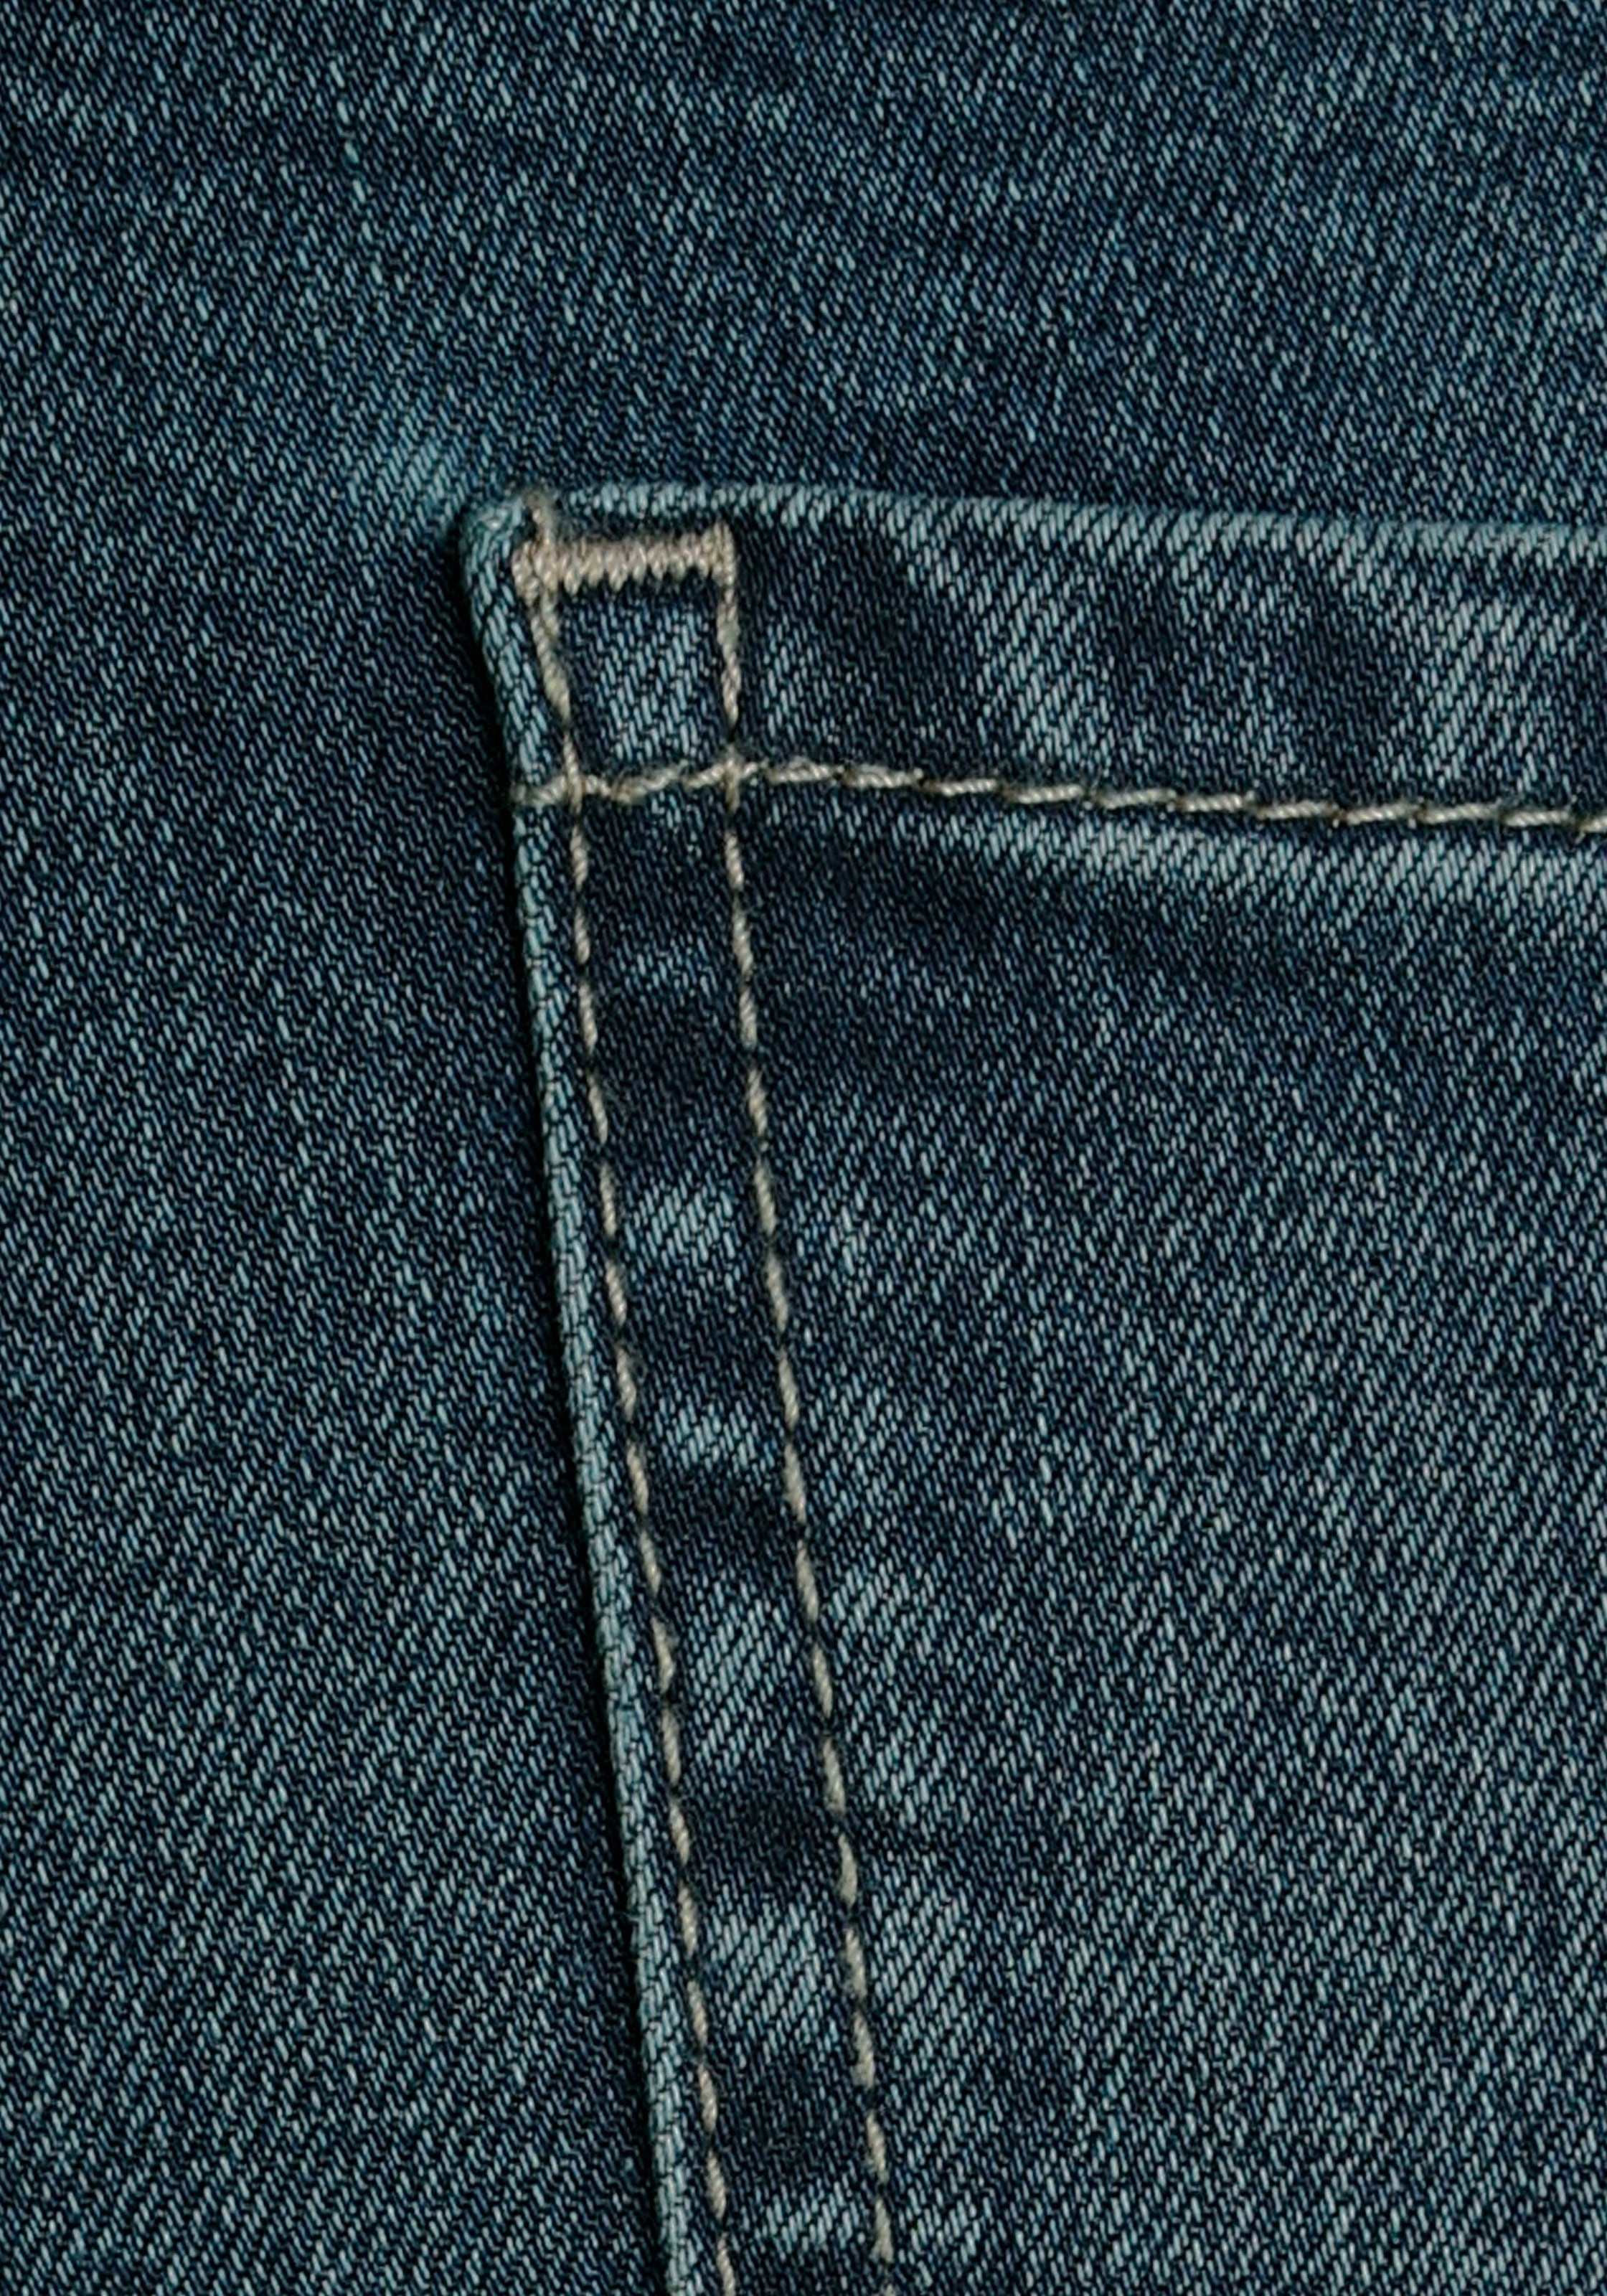 Alife & Kickin High-waist-Jeans »Straight-Fit AileenAK«, NEUE KOLLEKTION